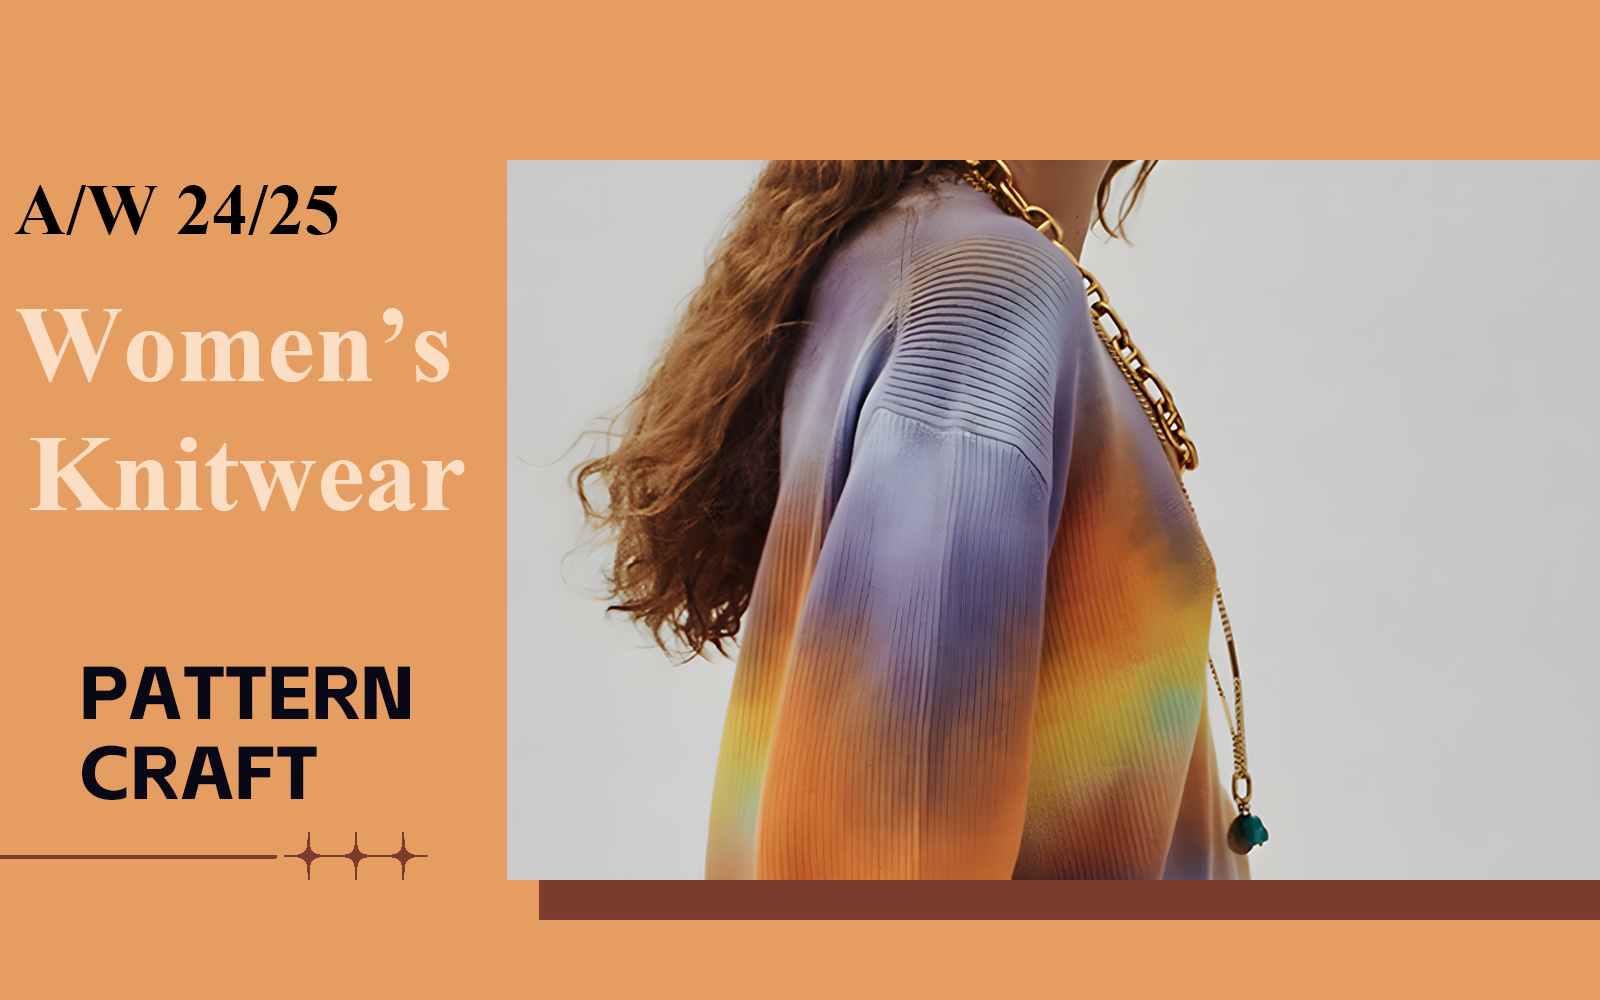 A/W 24/25 Pattern Craft Trend for Women's Knitwear